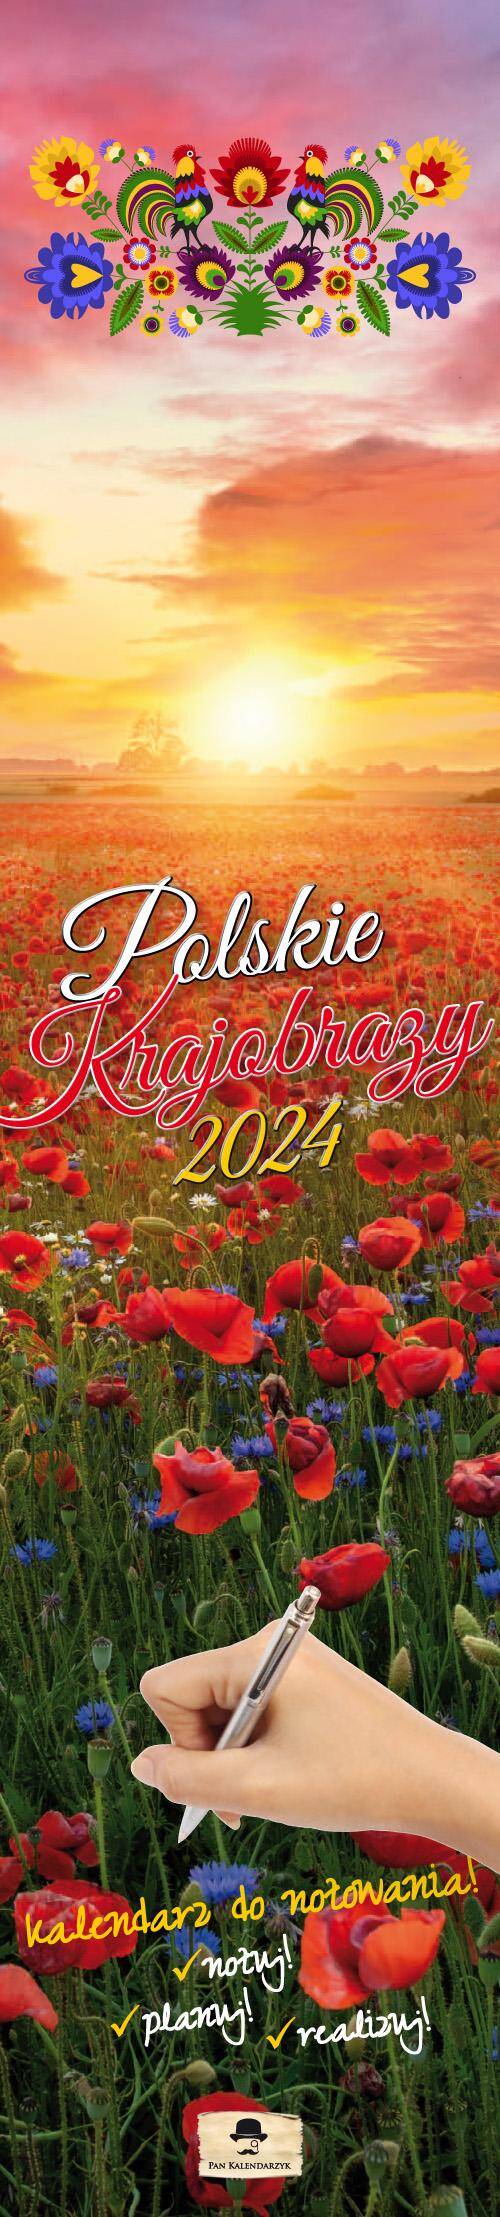 Kalendarz 2024 Polskie krajobrazy paskowy wąski KPW-V.3